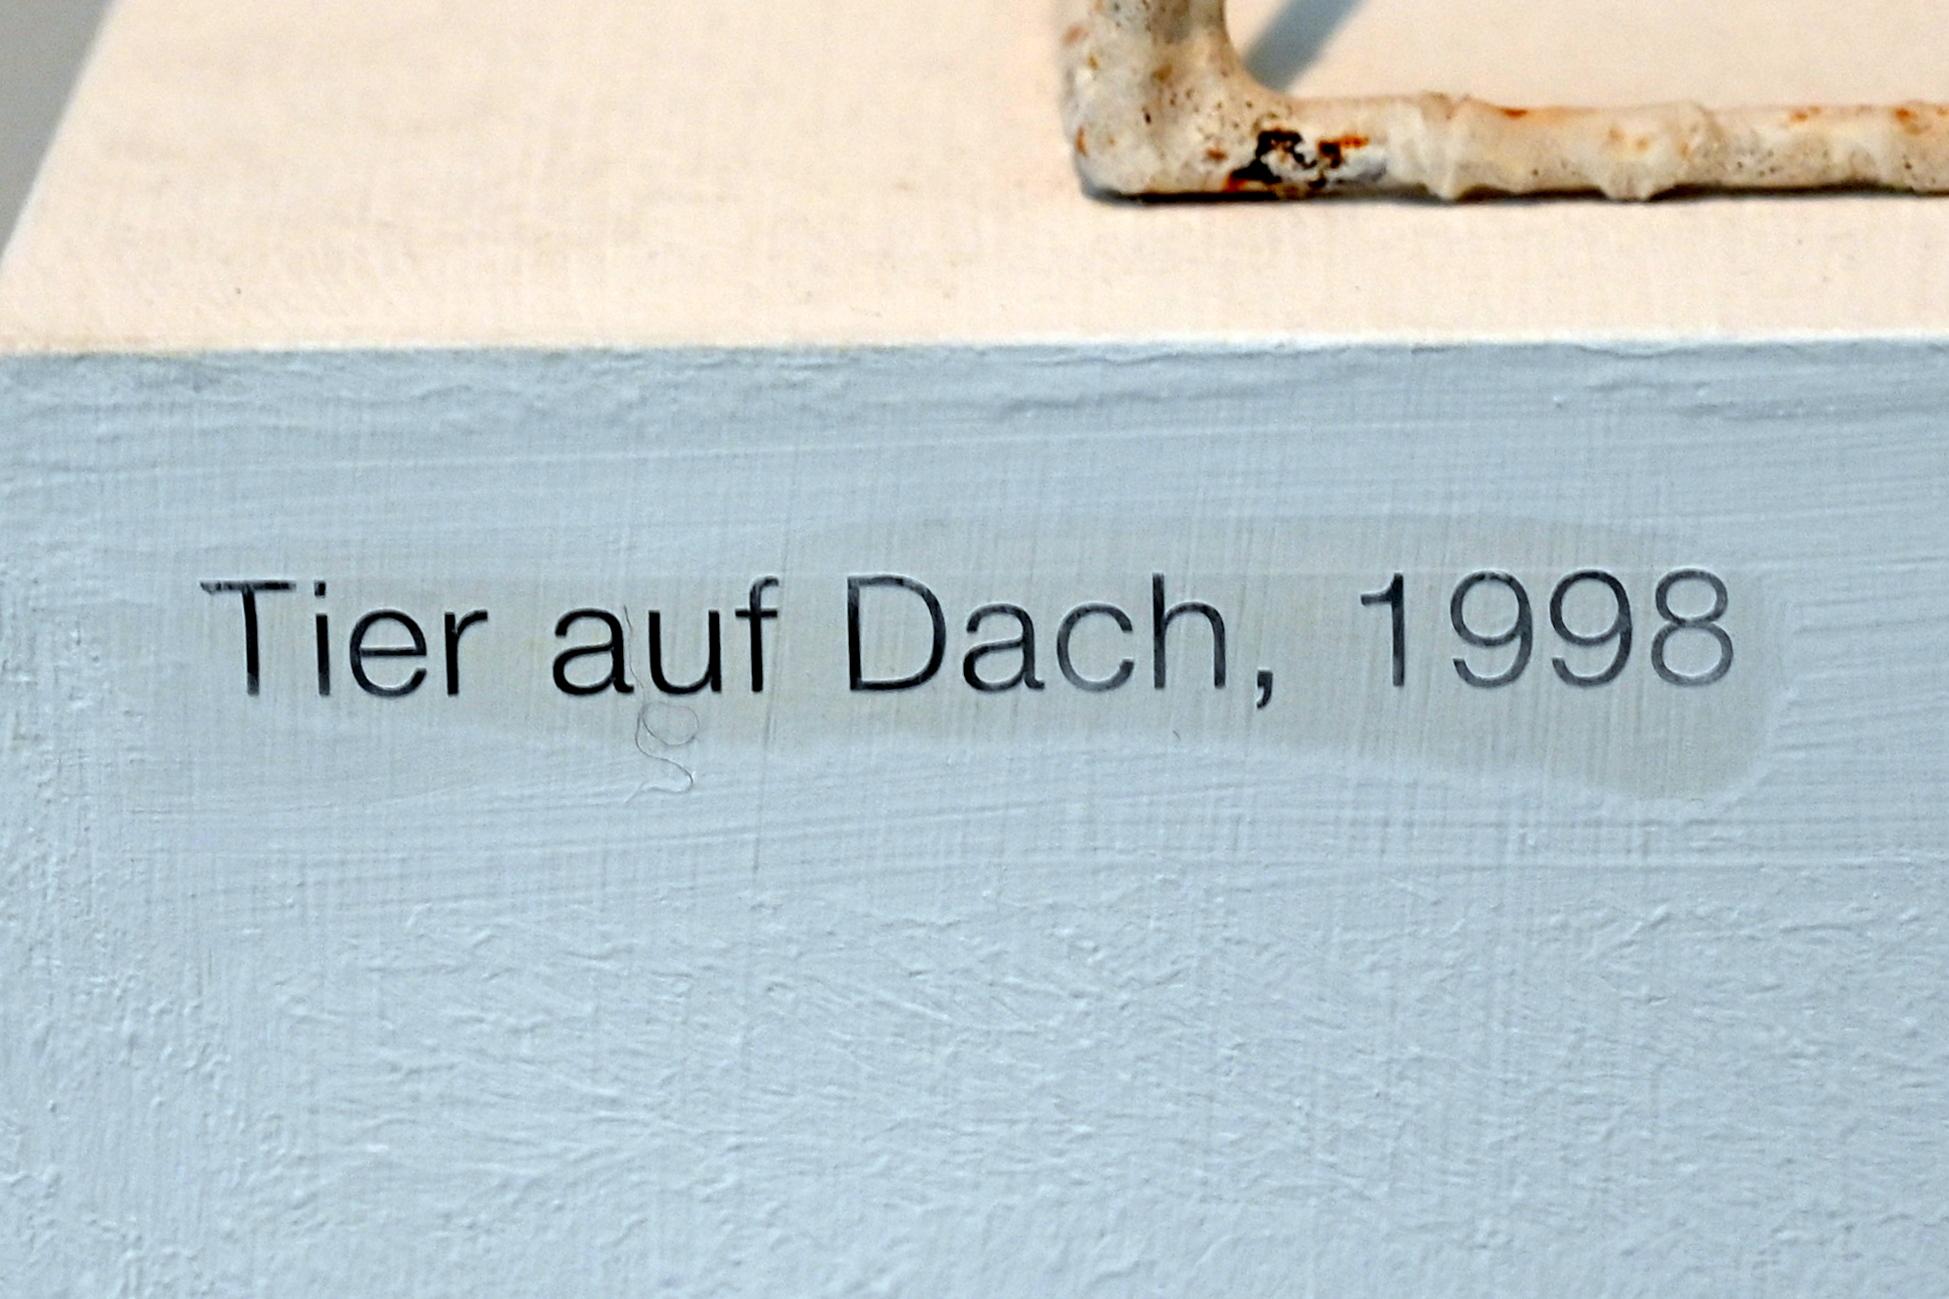 Lothar Fischer (1959–2004), Tier auf Dach, Neumarkt in der Oberpfalz, Museum Lothar Fischer, Erdgeschoß Raum 2, 1998, Bild 5/5